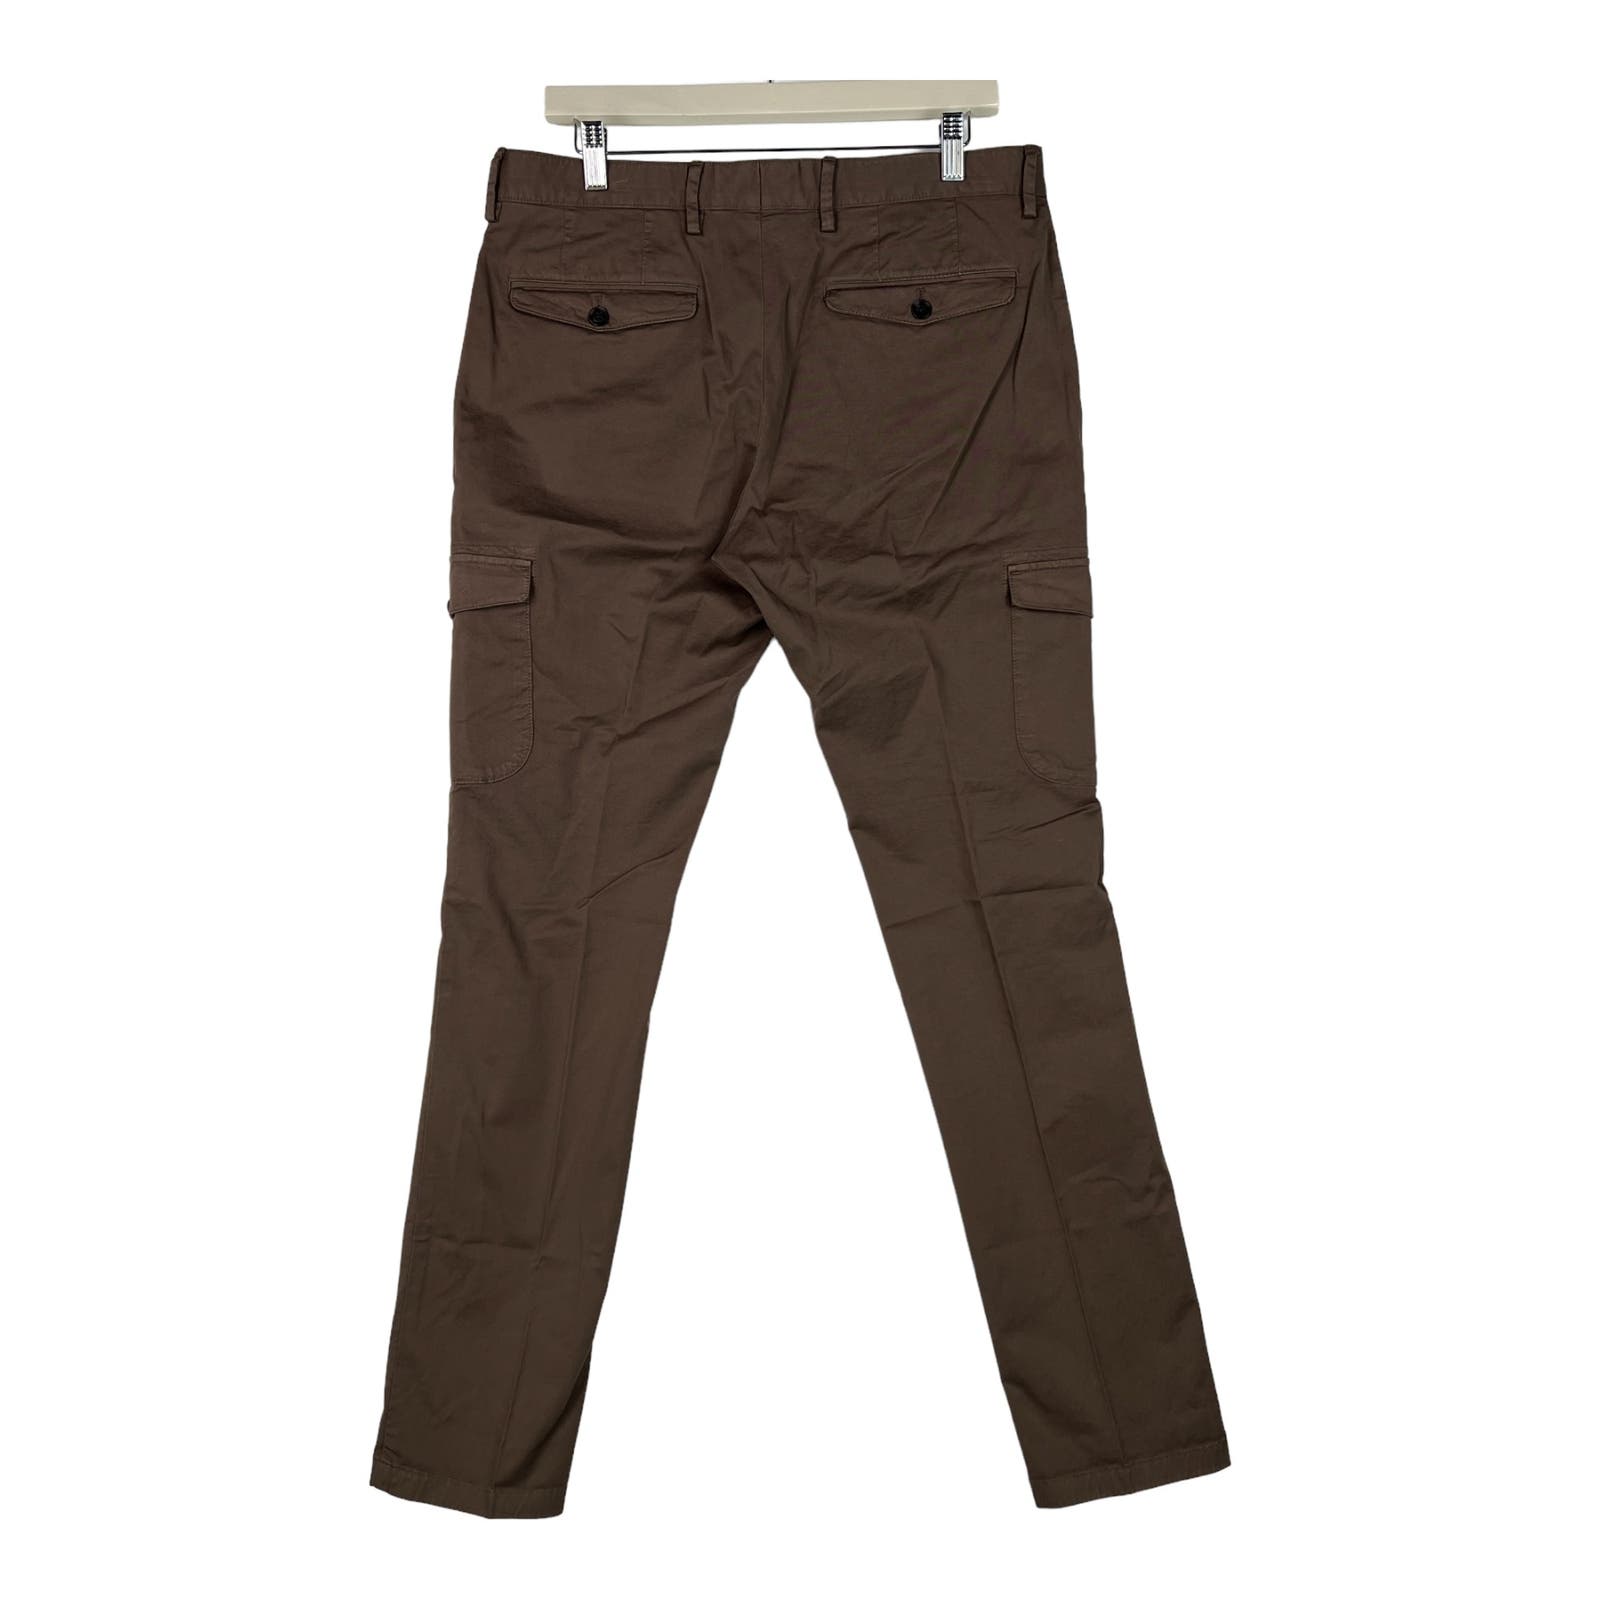 Dylan Gray Bloomingdales Men Brown Pants US 30 Regular Fit Cargo